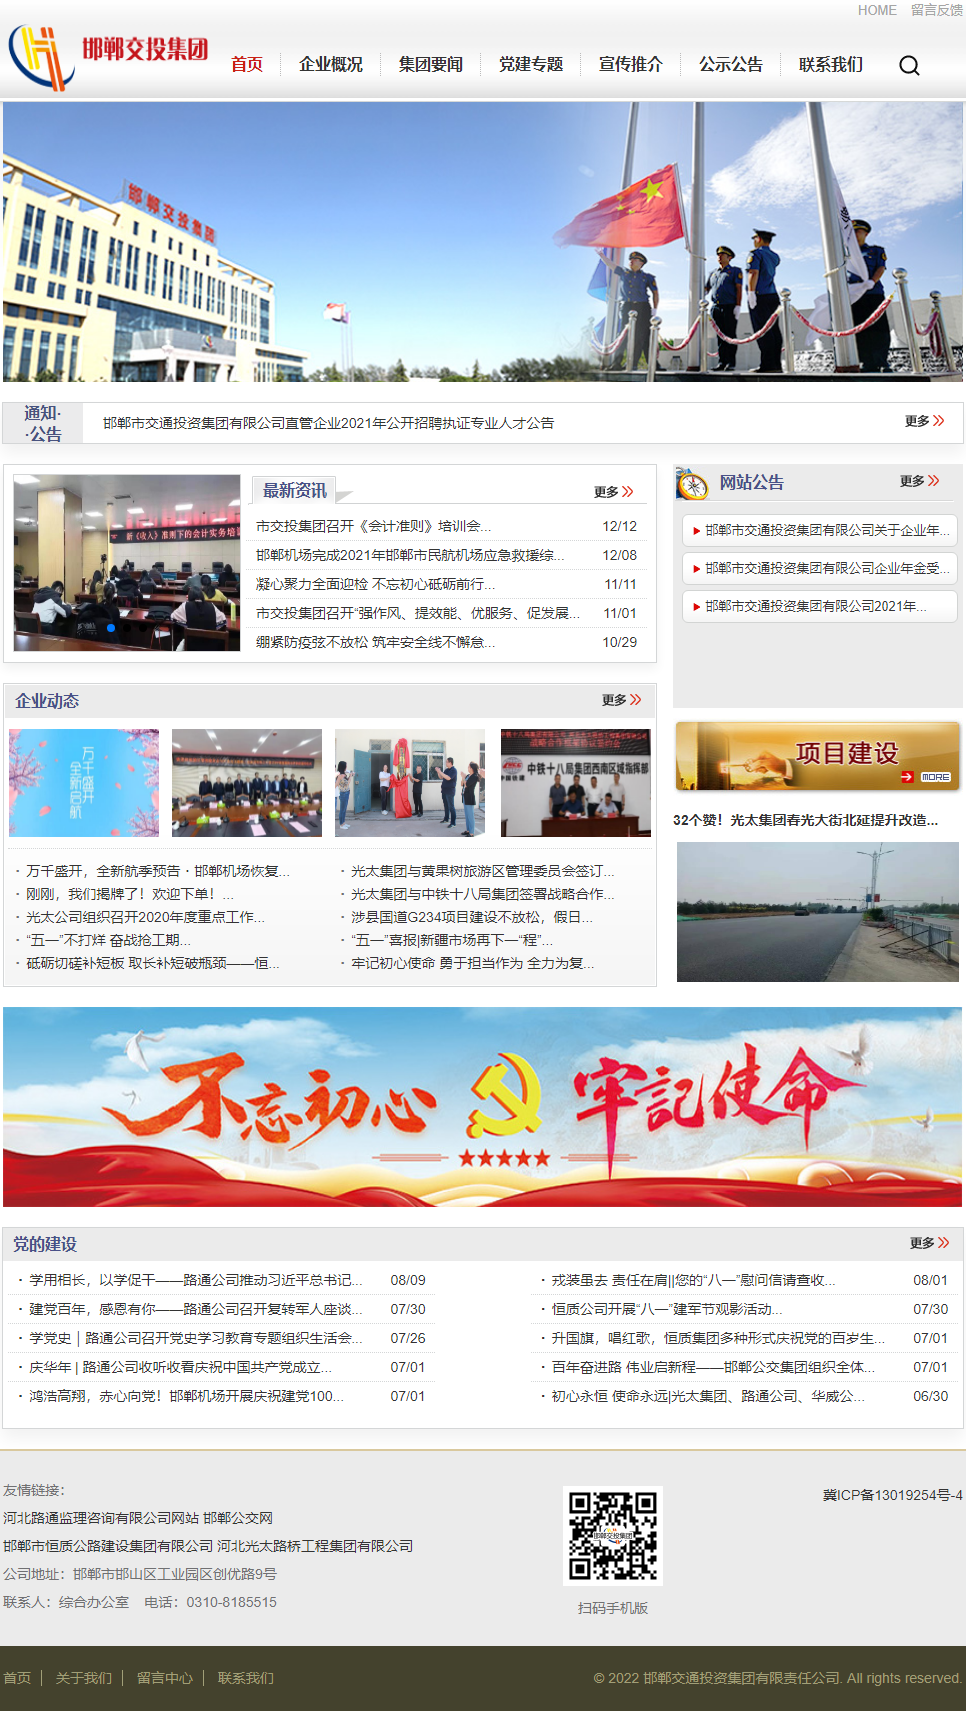 邯郸日报社网站案例